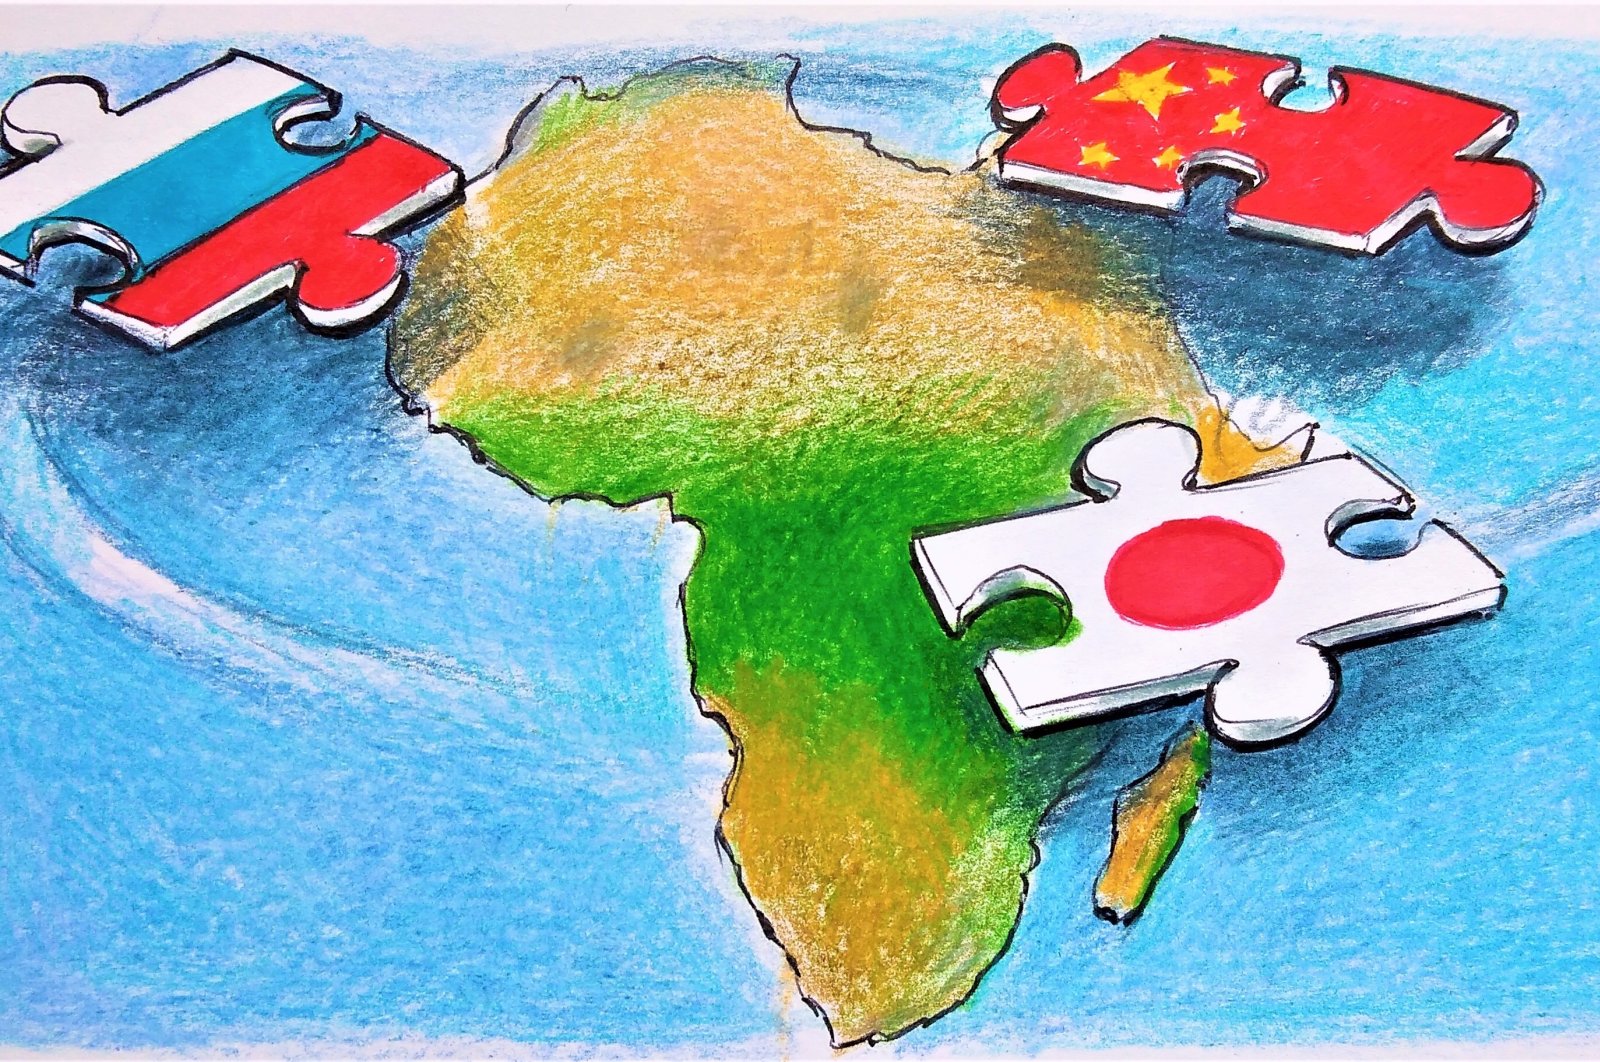 Persaingan Jepang dengan Rusia dan Cina di selatan global